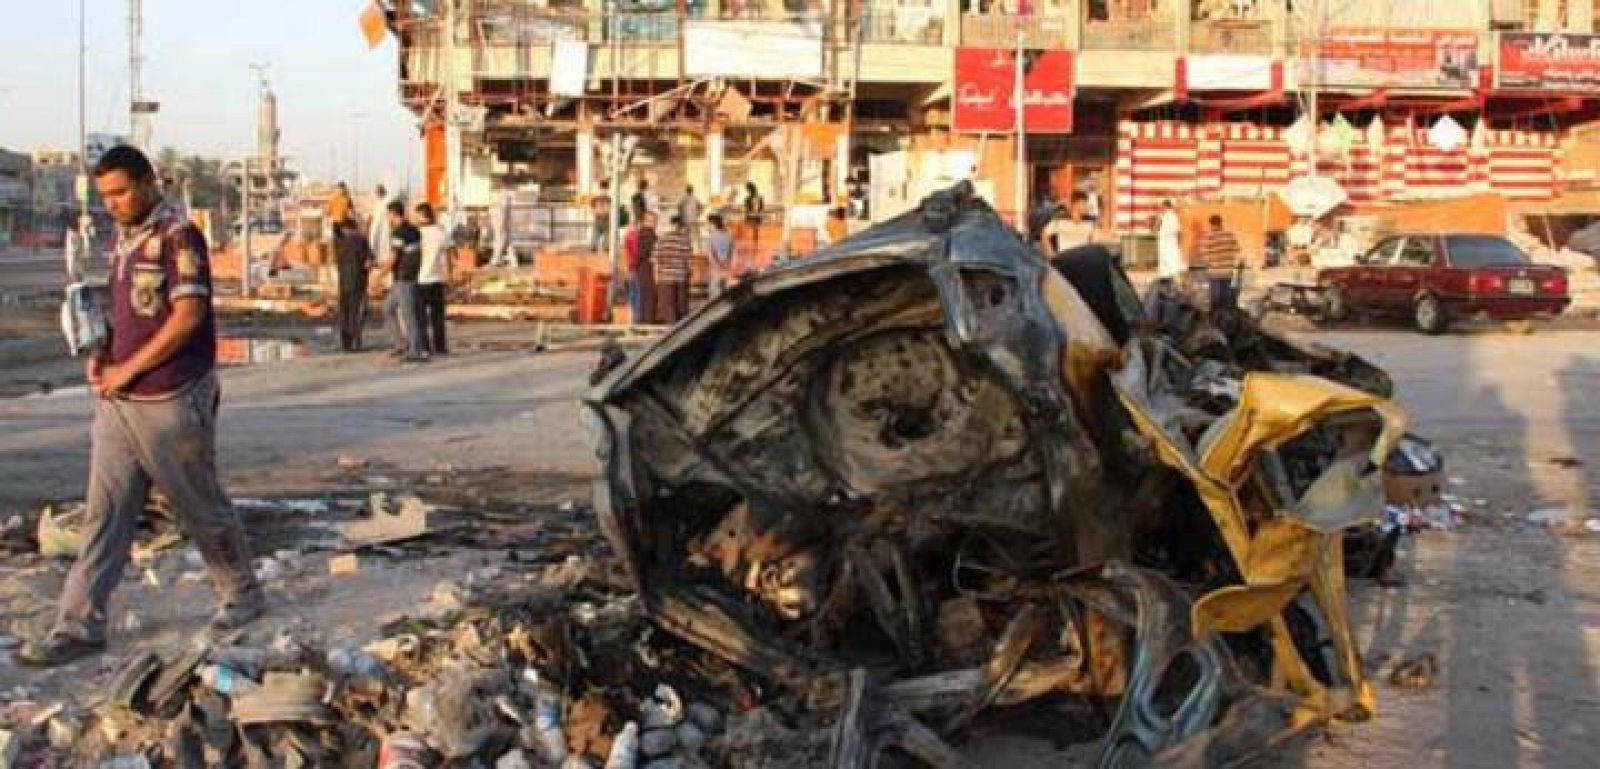 Imagen sobre uno de los coches bomba de los atentados en Sadr City, Bagdad. REUTERS/Wissm al-Okili